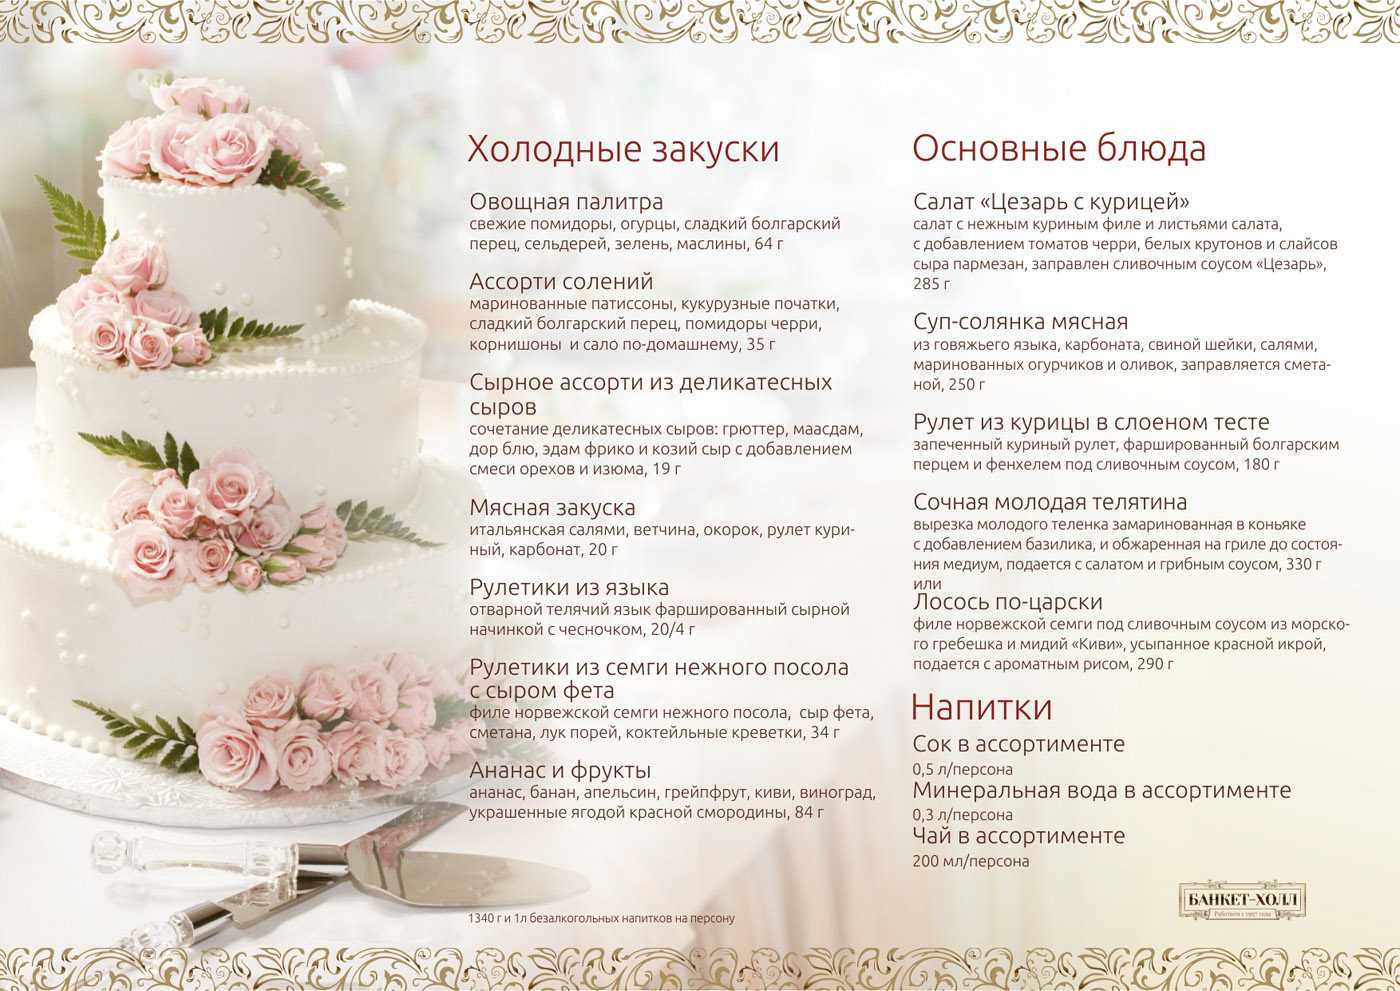 Свадебное меню на 30 человек в кафе & дома (или ресторане) летом [2019] – варианты блюд и дополнительные советы